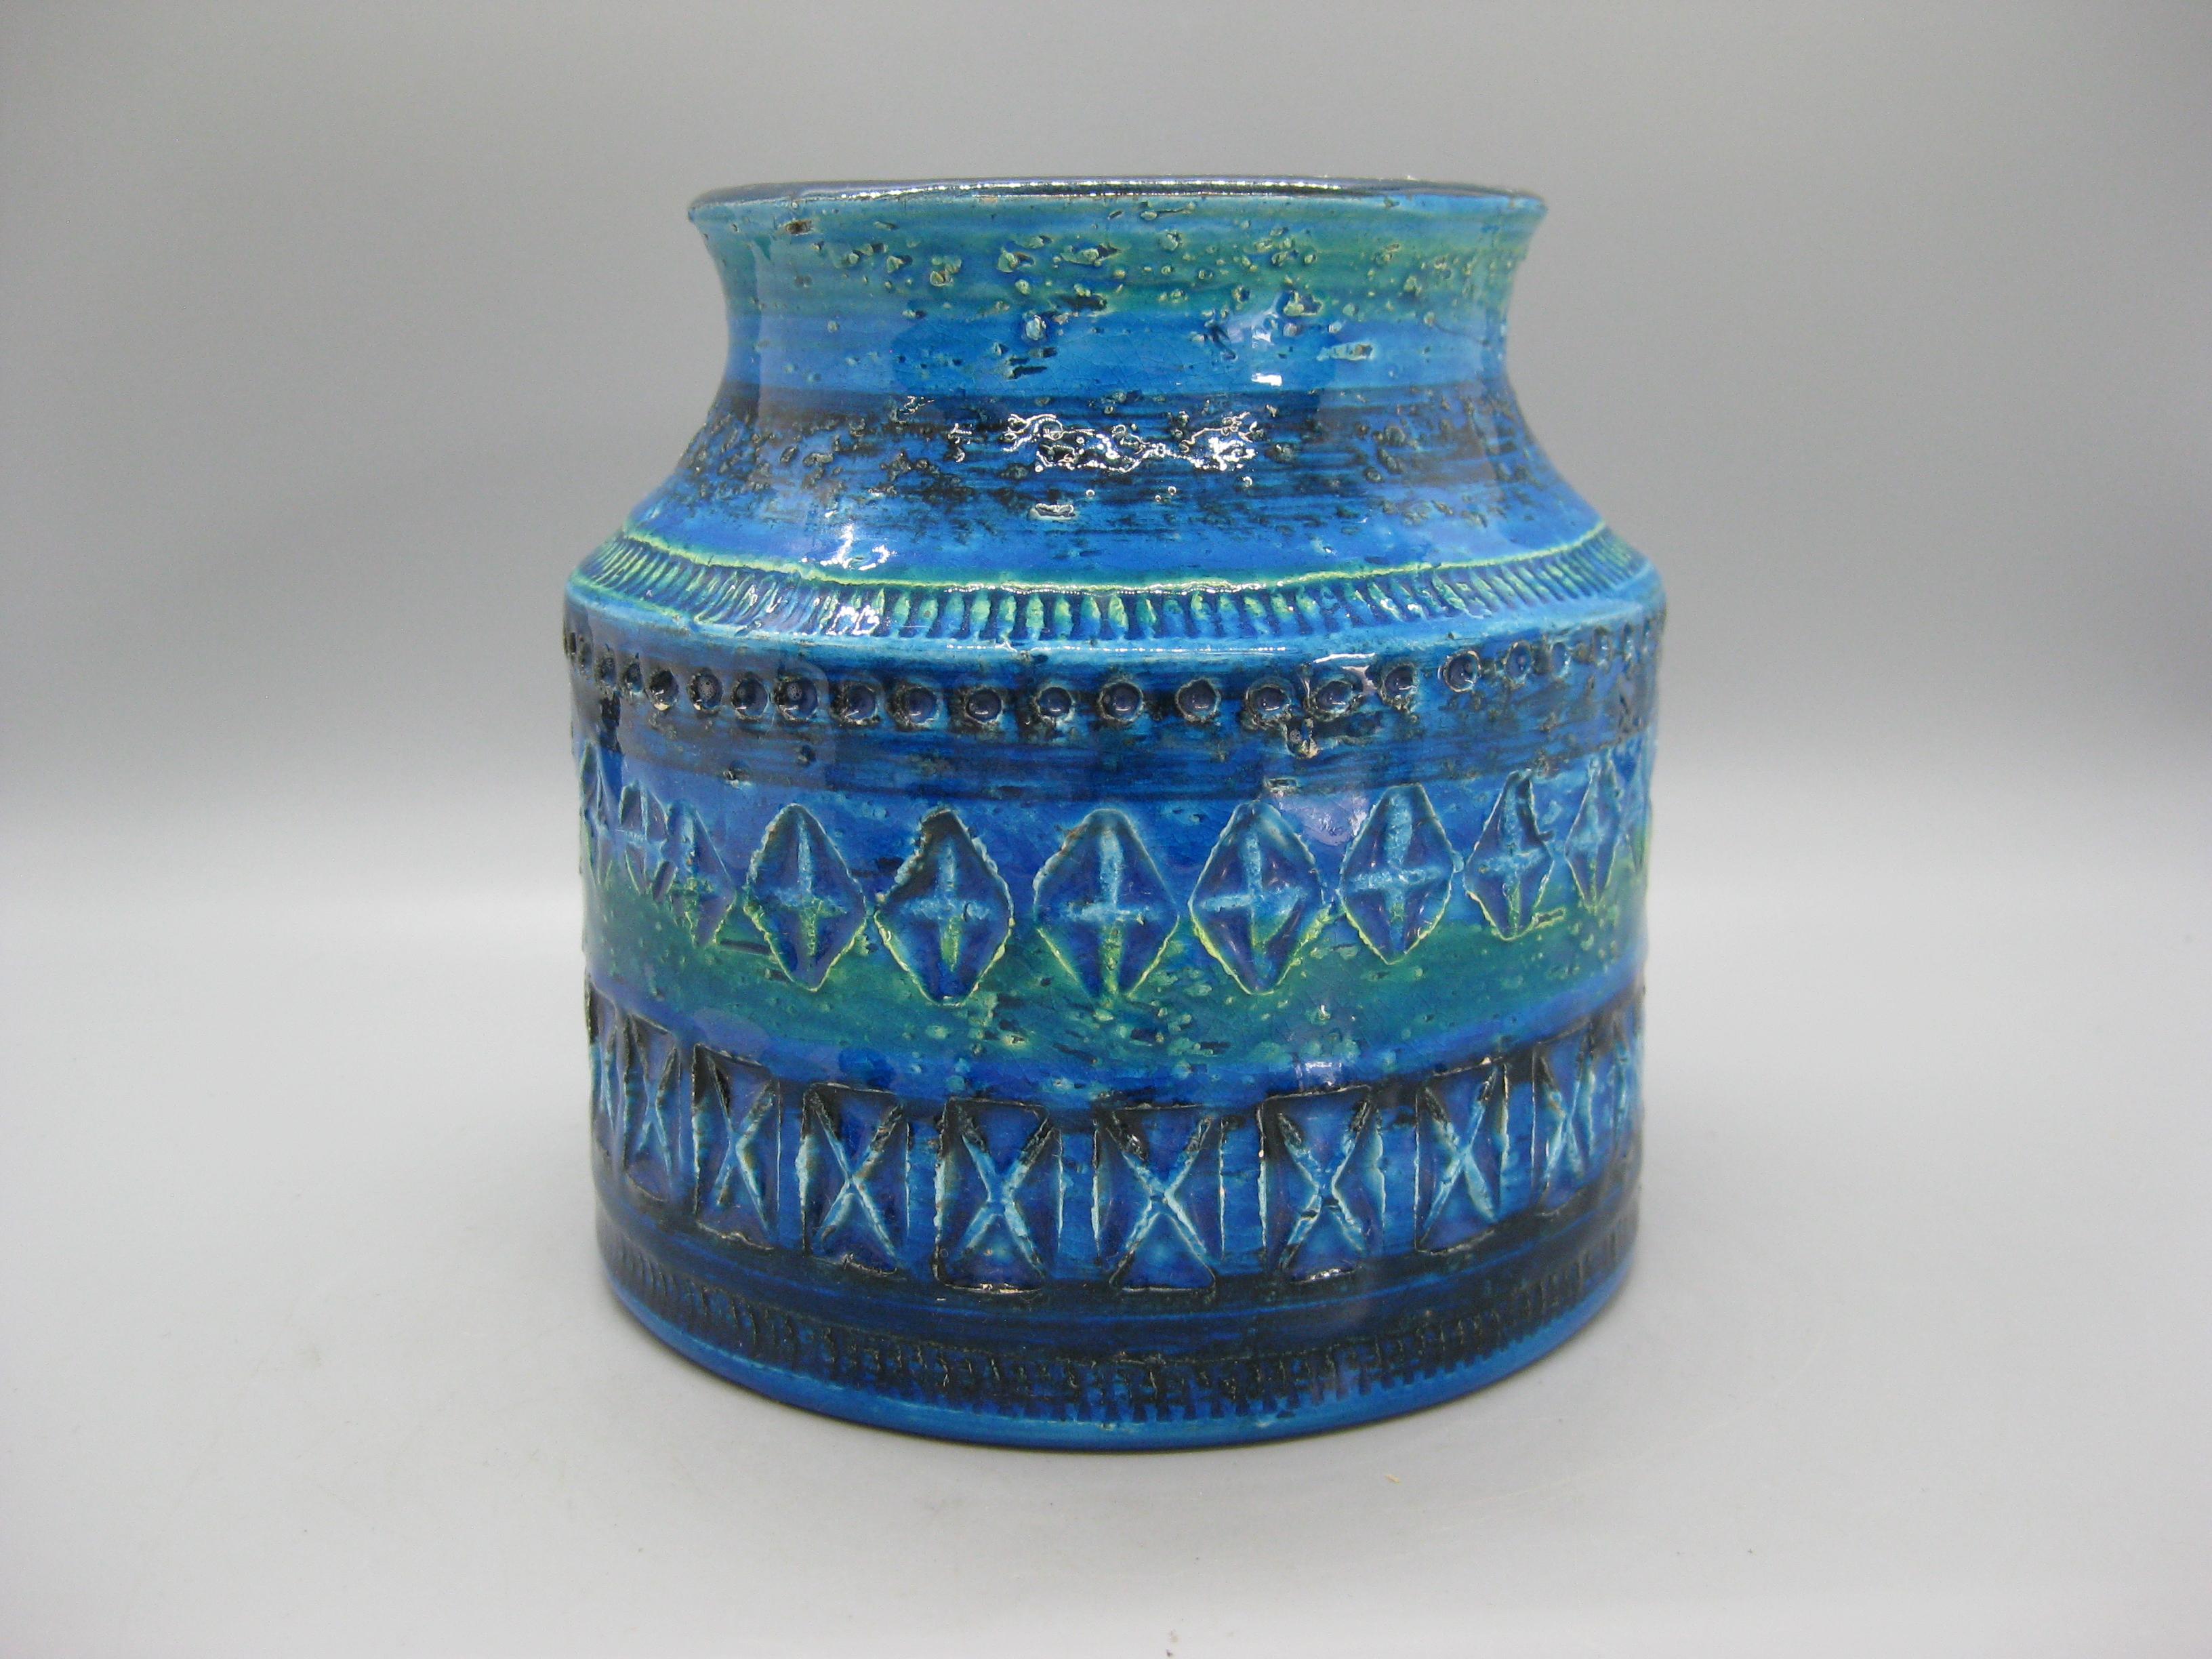 Wunderschöne Vintage Aldo Londi Bitossi Keramik/Keramik Rimini blaue Vase, ca. 1960er Jahre. Sie wurde in Italien hergestellt und ist auf der Unterseite signiert. Scheint nie benutzt worden zu sein. Großartige abstrakte Form und Design. Wunderschöne